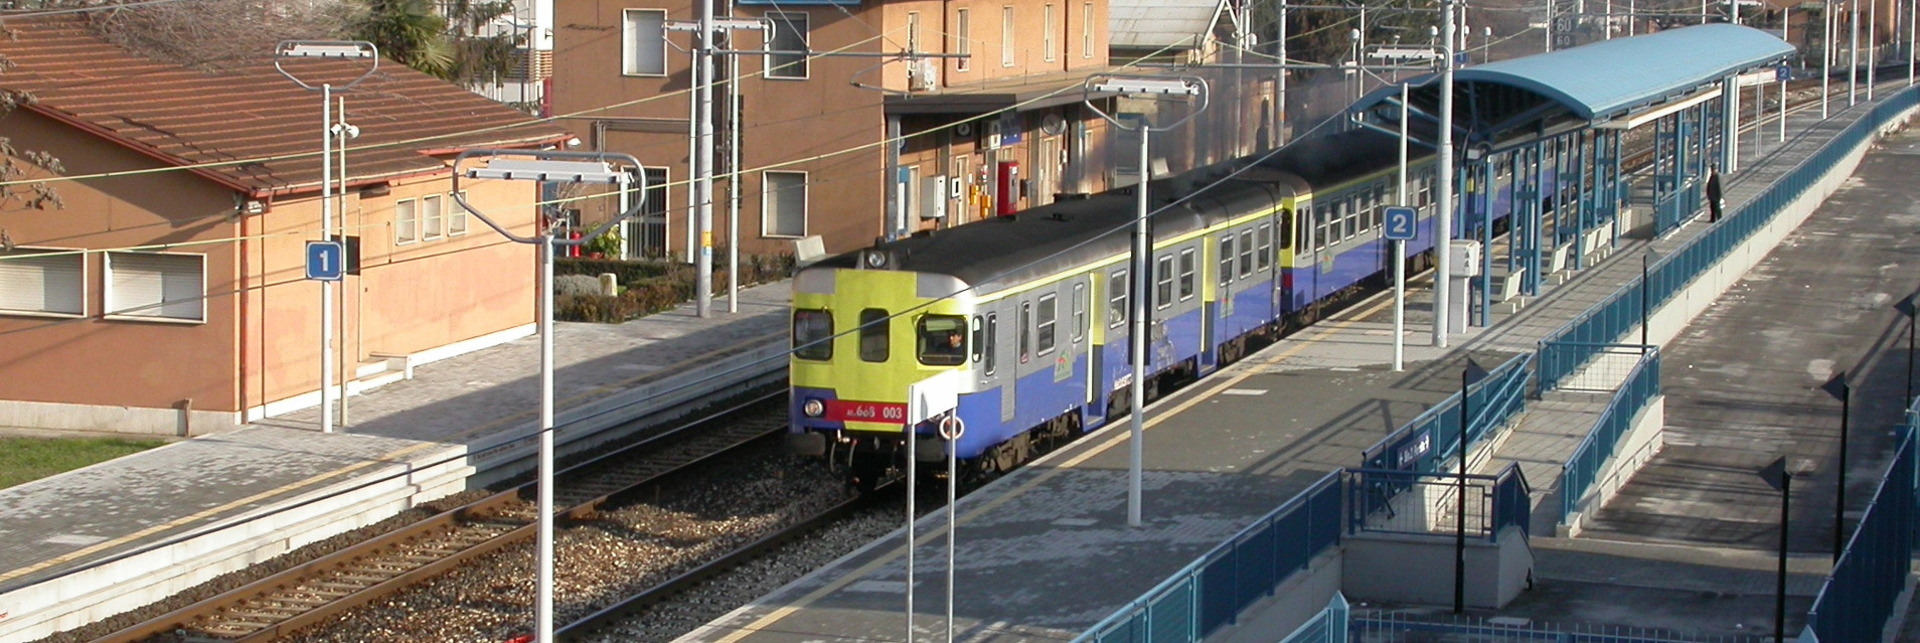 Treno in stazione - Archivio Città metropolitana di Bologna